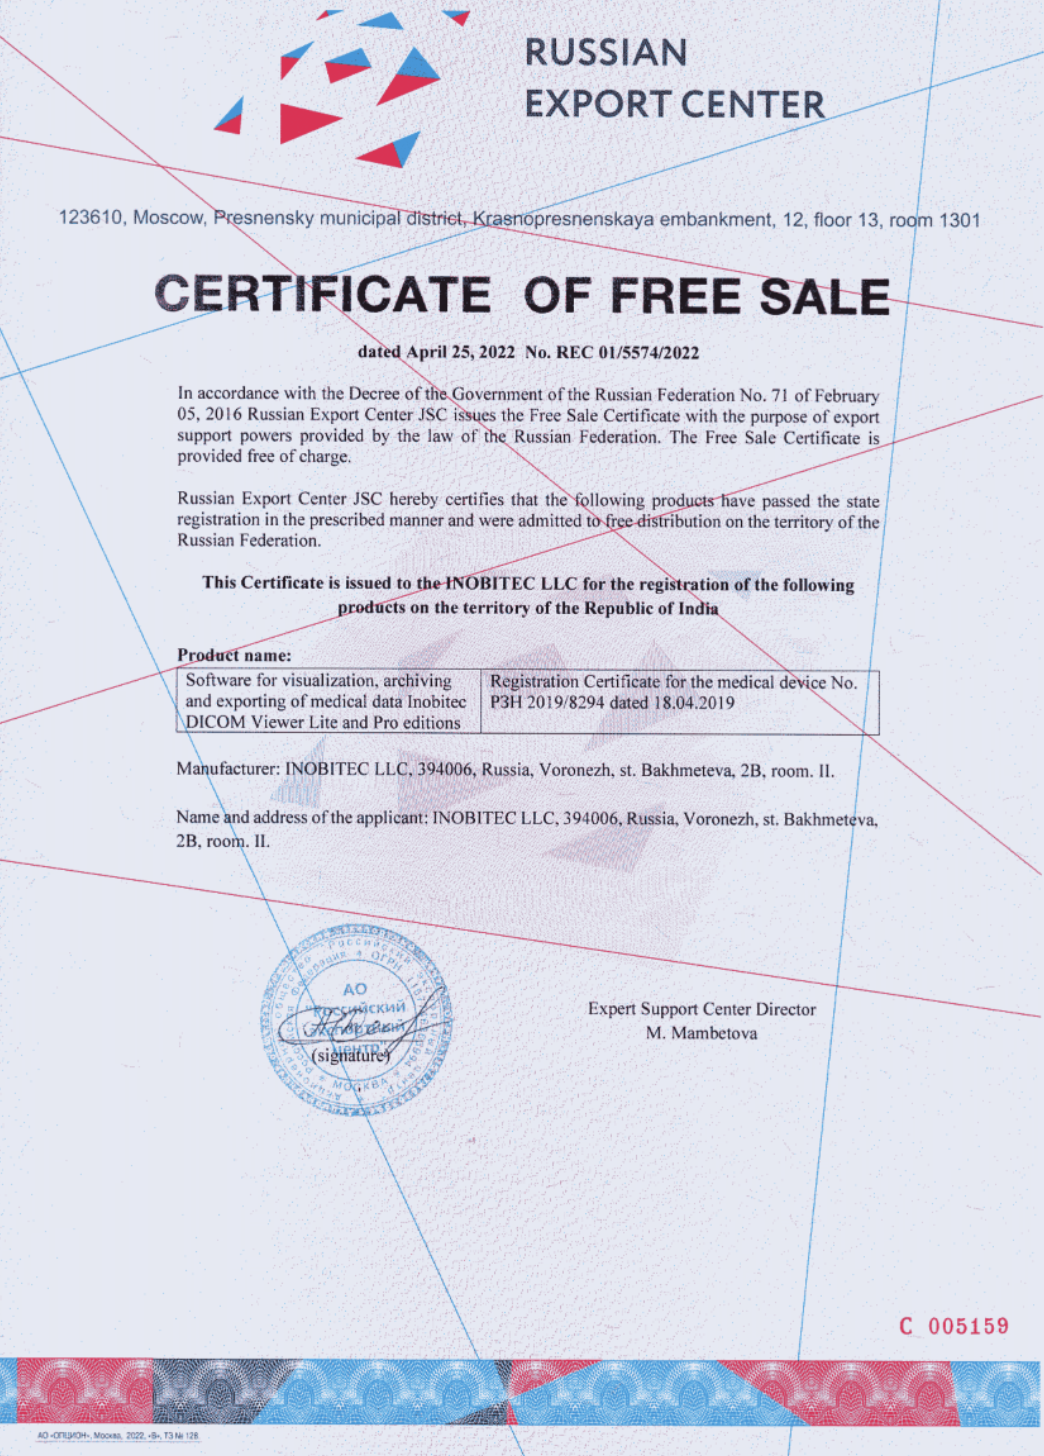 Certificado de Venta Libre No. REC 01/5574/2022